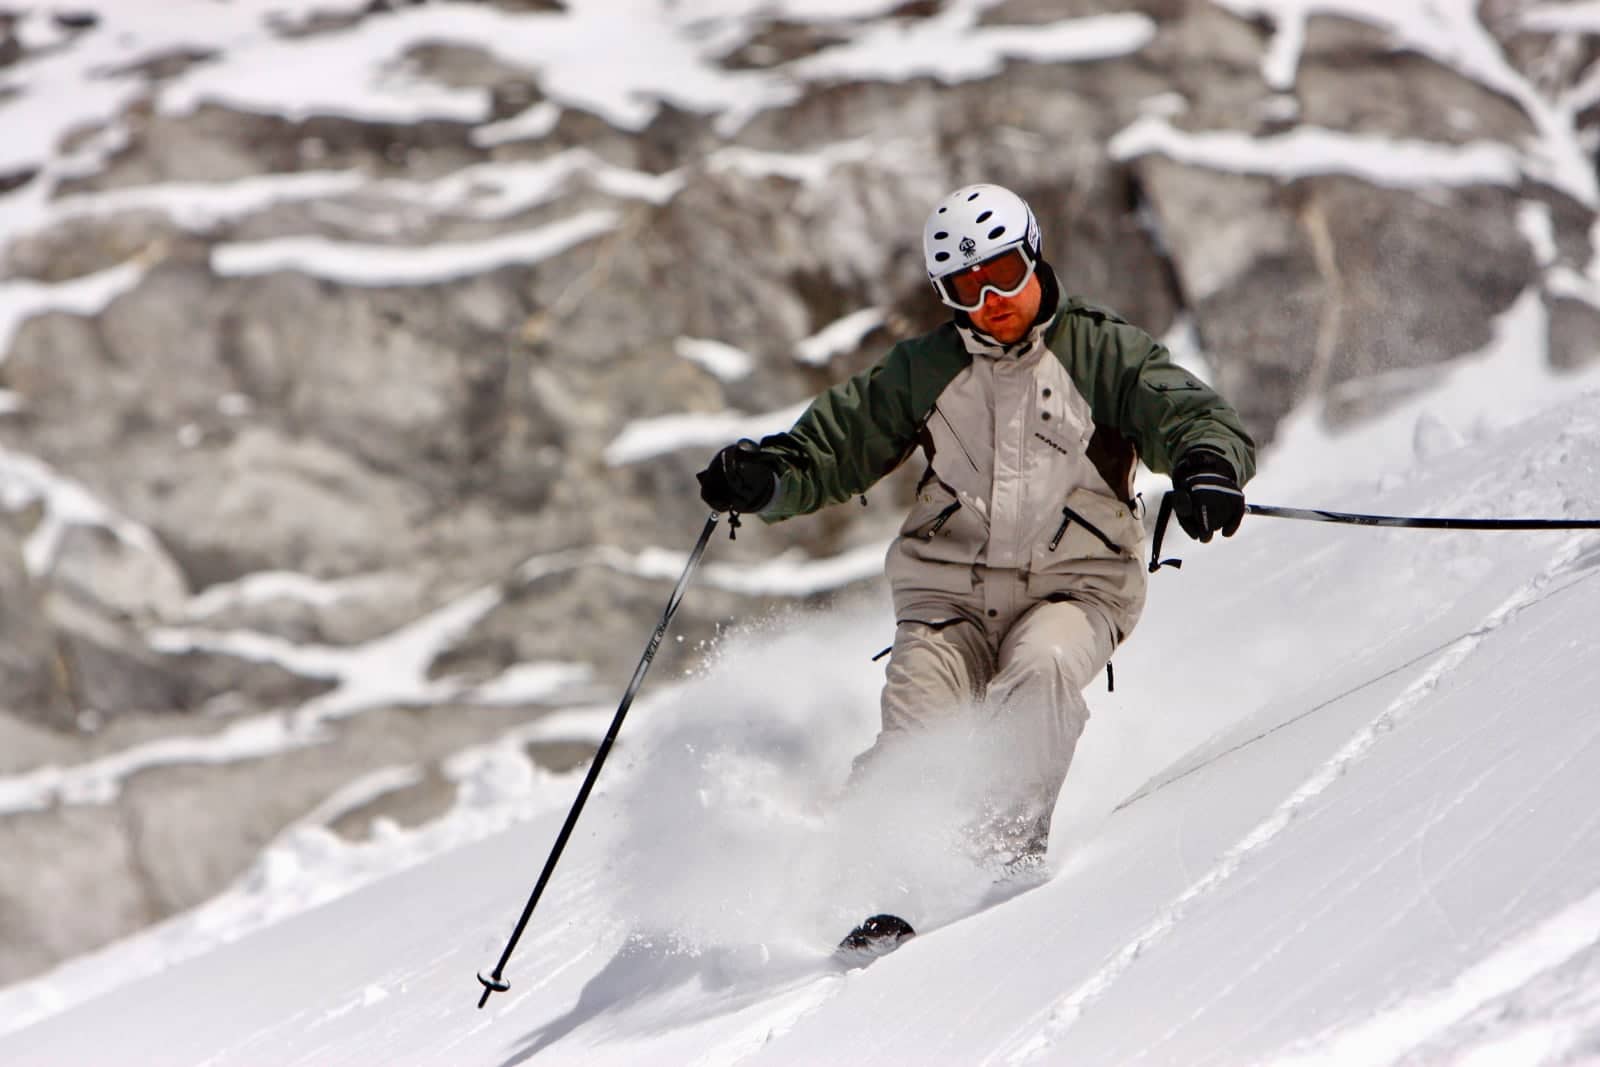 Downhill skier enjoying fresh snow on mountain